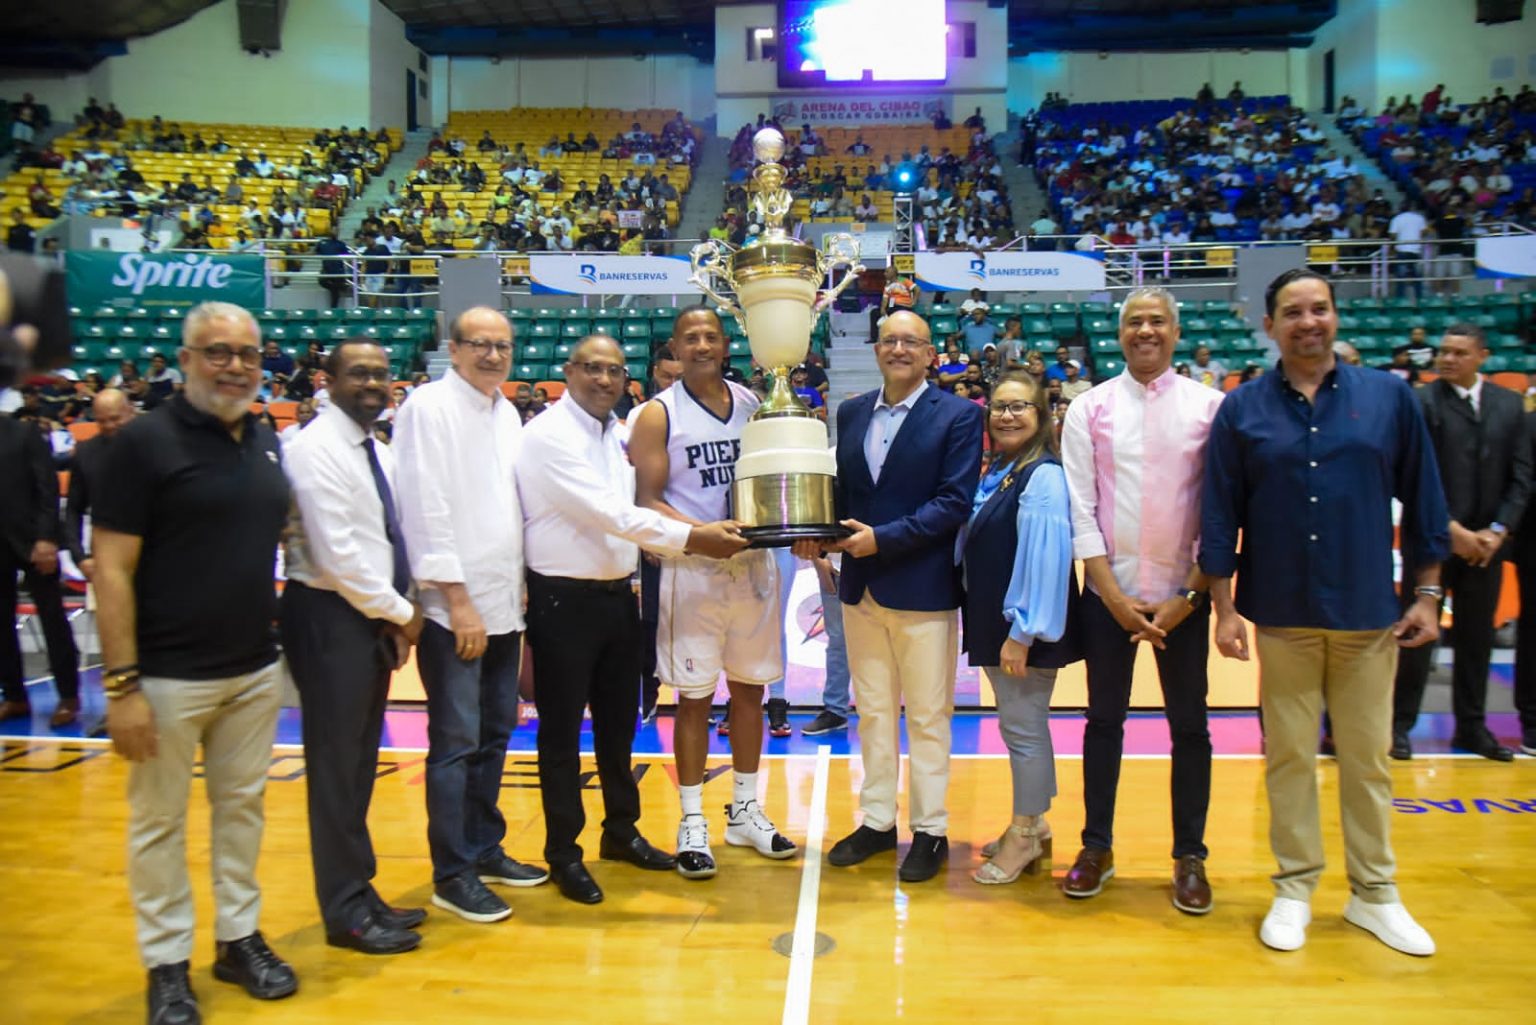 Baloncesto Superior de Santiago dedicado a Jose Ignacio paliza y con gran homenaje a Jose Bombo Abreu